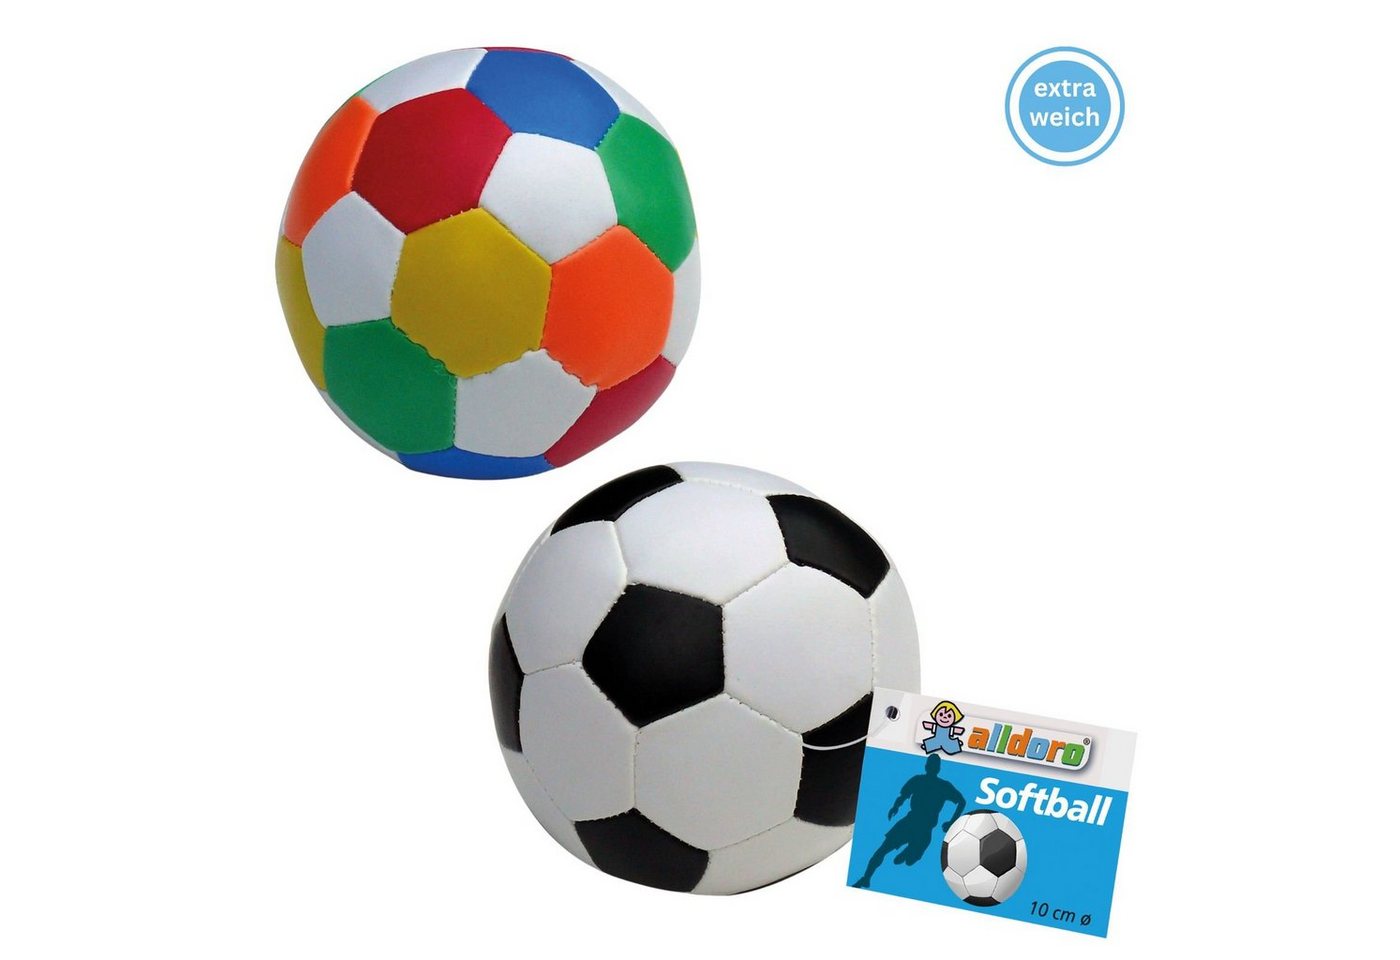 alldoro Softball 60305, 2er Set, Ø 10 cm, schwarz-weiß & bunt, extra weiche, kleine Spielbälle von alldoro